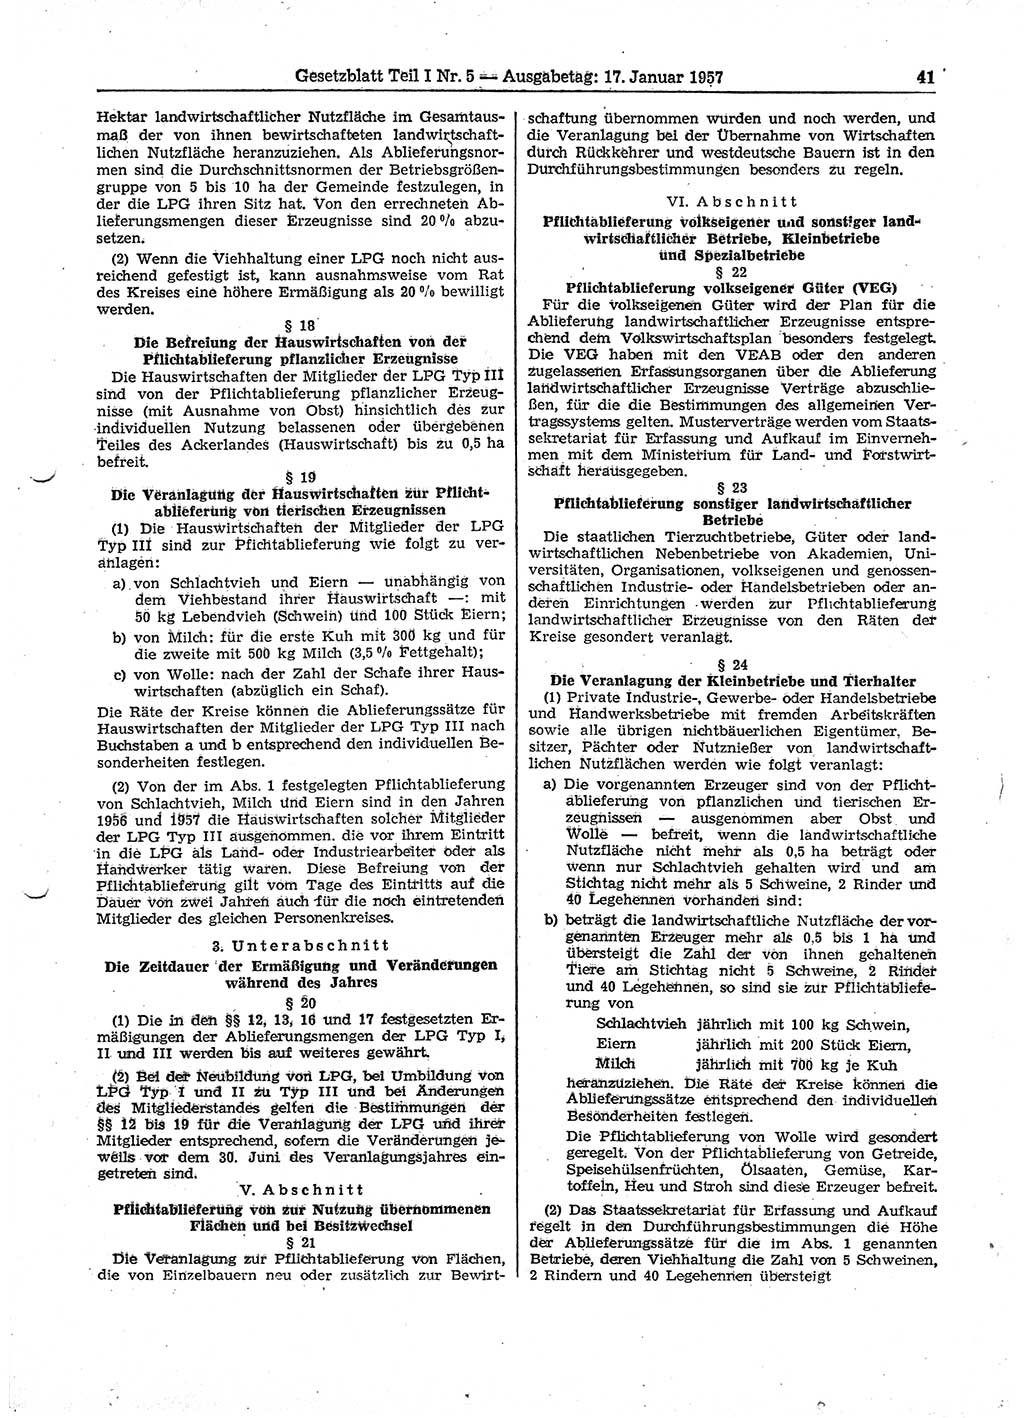 Gesetzblatt (GBl.) der Deutschen Demokratischen Republik (DDR) Teil Ⅰ 1957, Seite 41 (GBl. DDR Ⅰ 1957, S. 41)